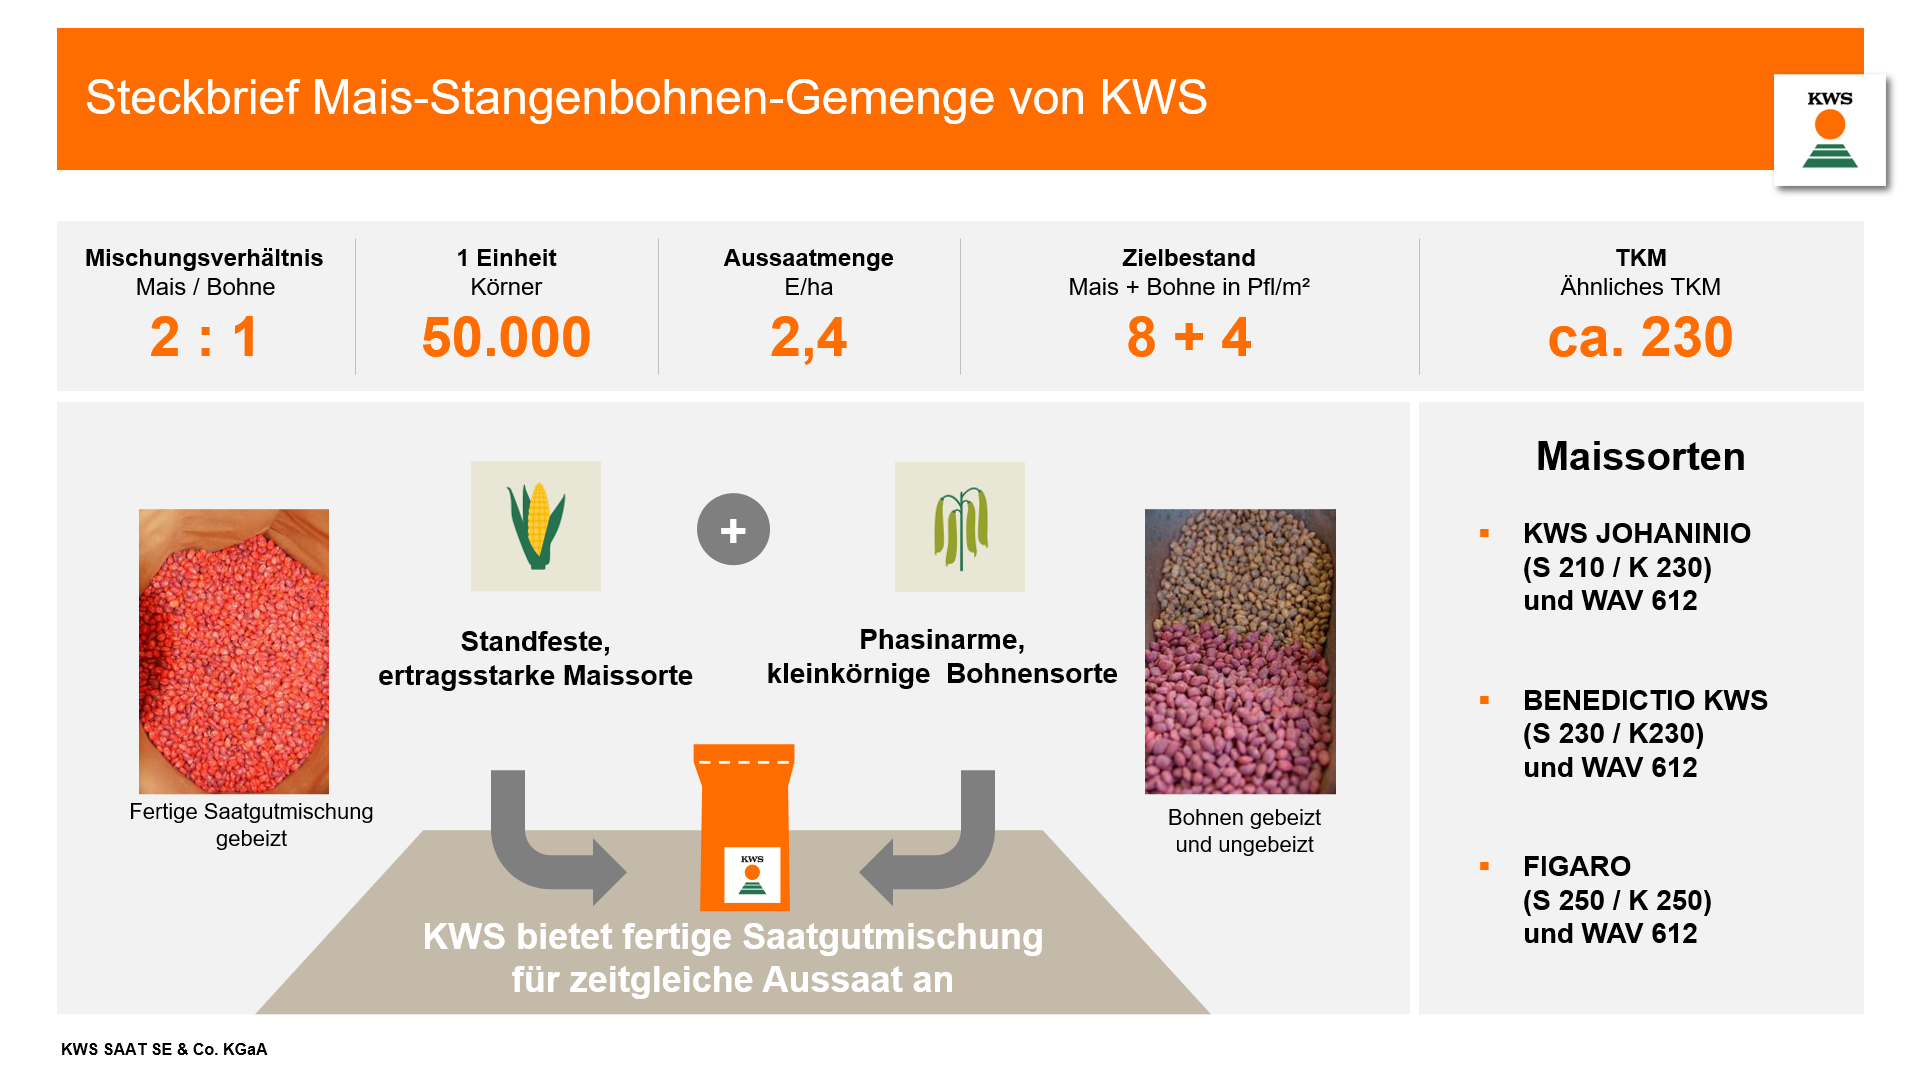 Steckbrief Mais-Stangenbohnen-Gemenge von KWS